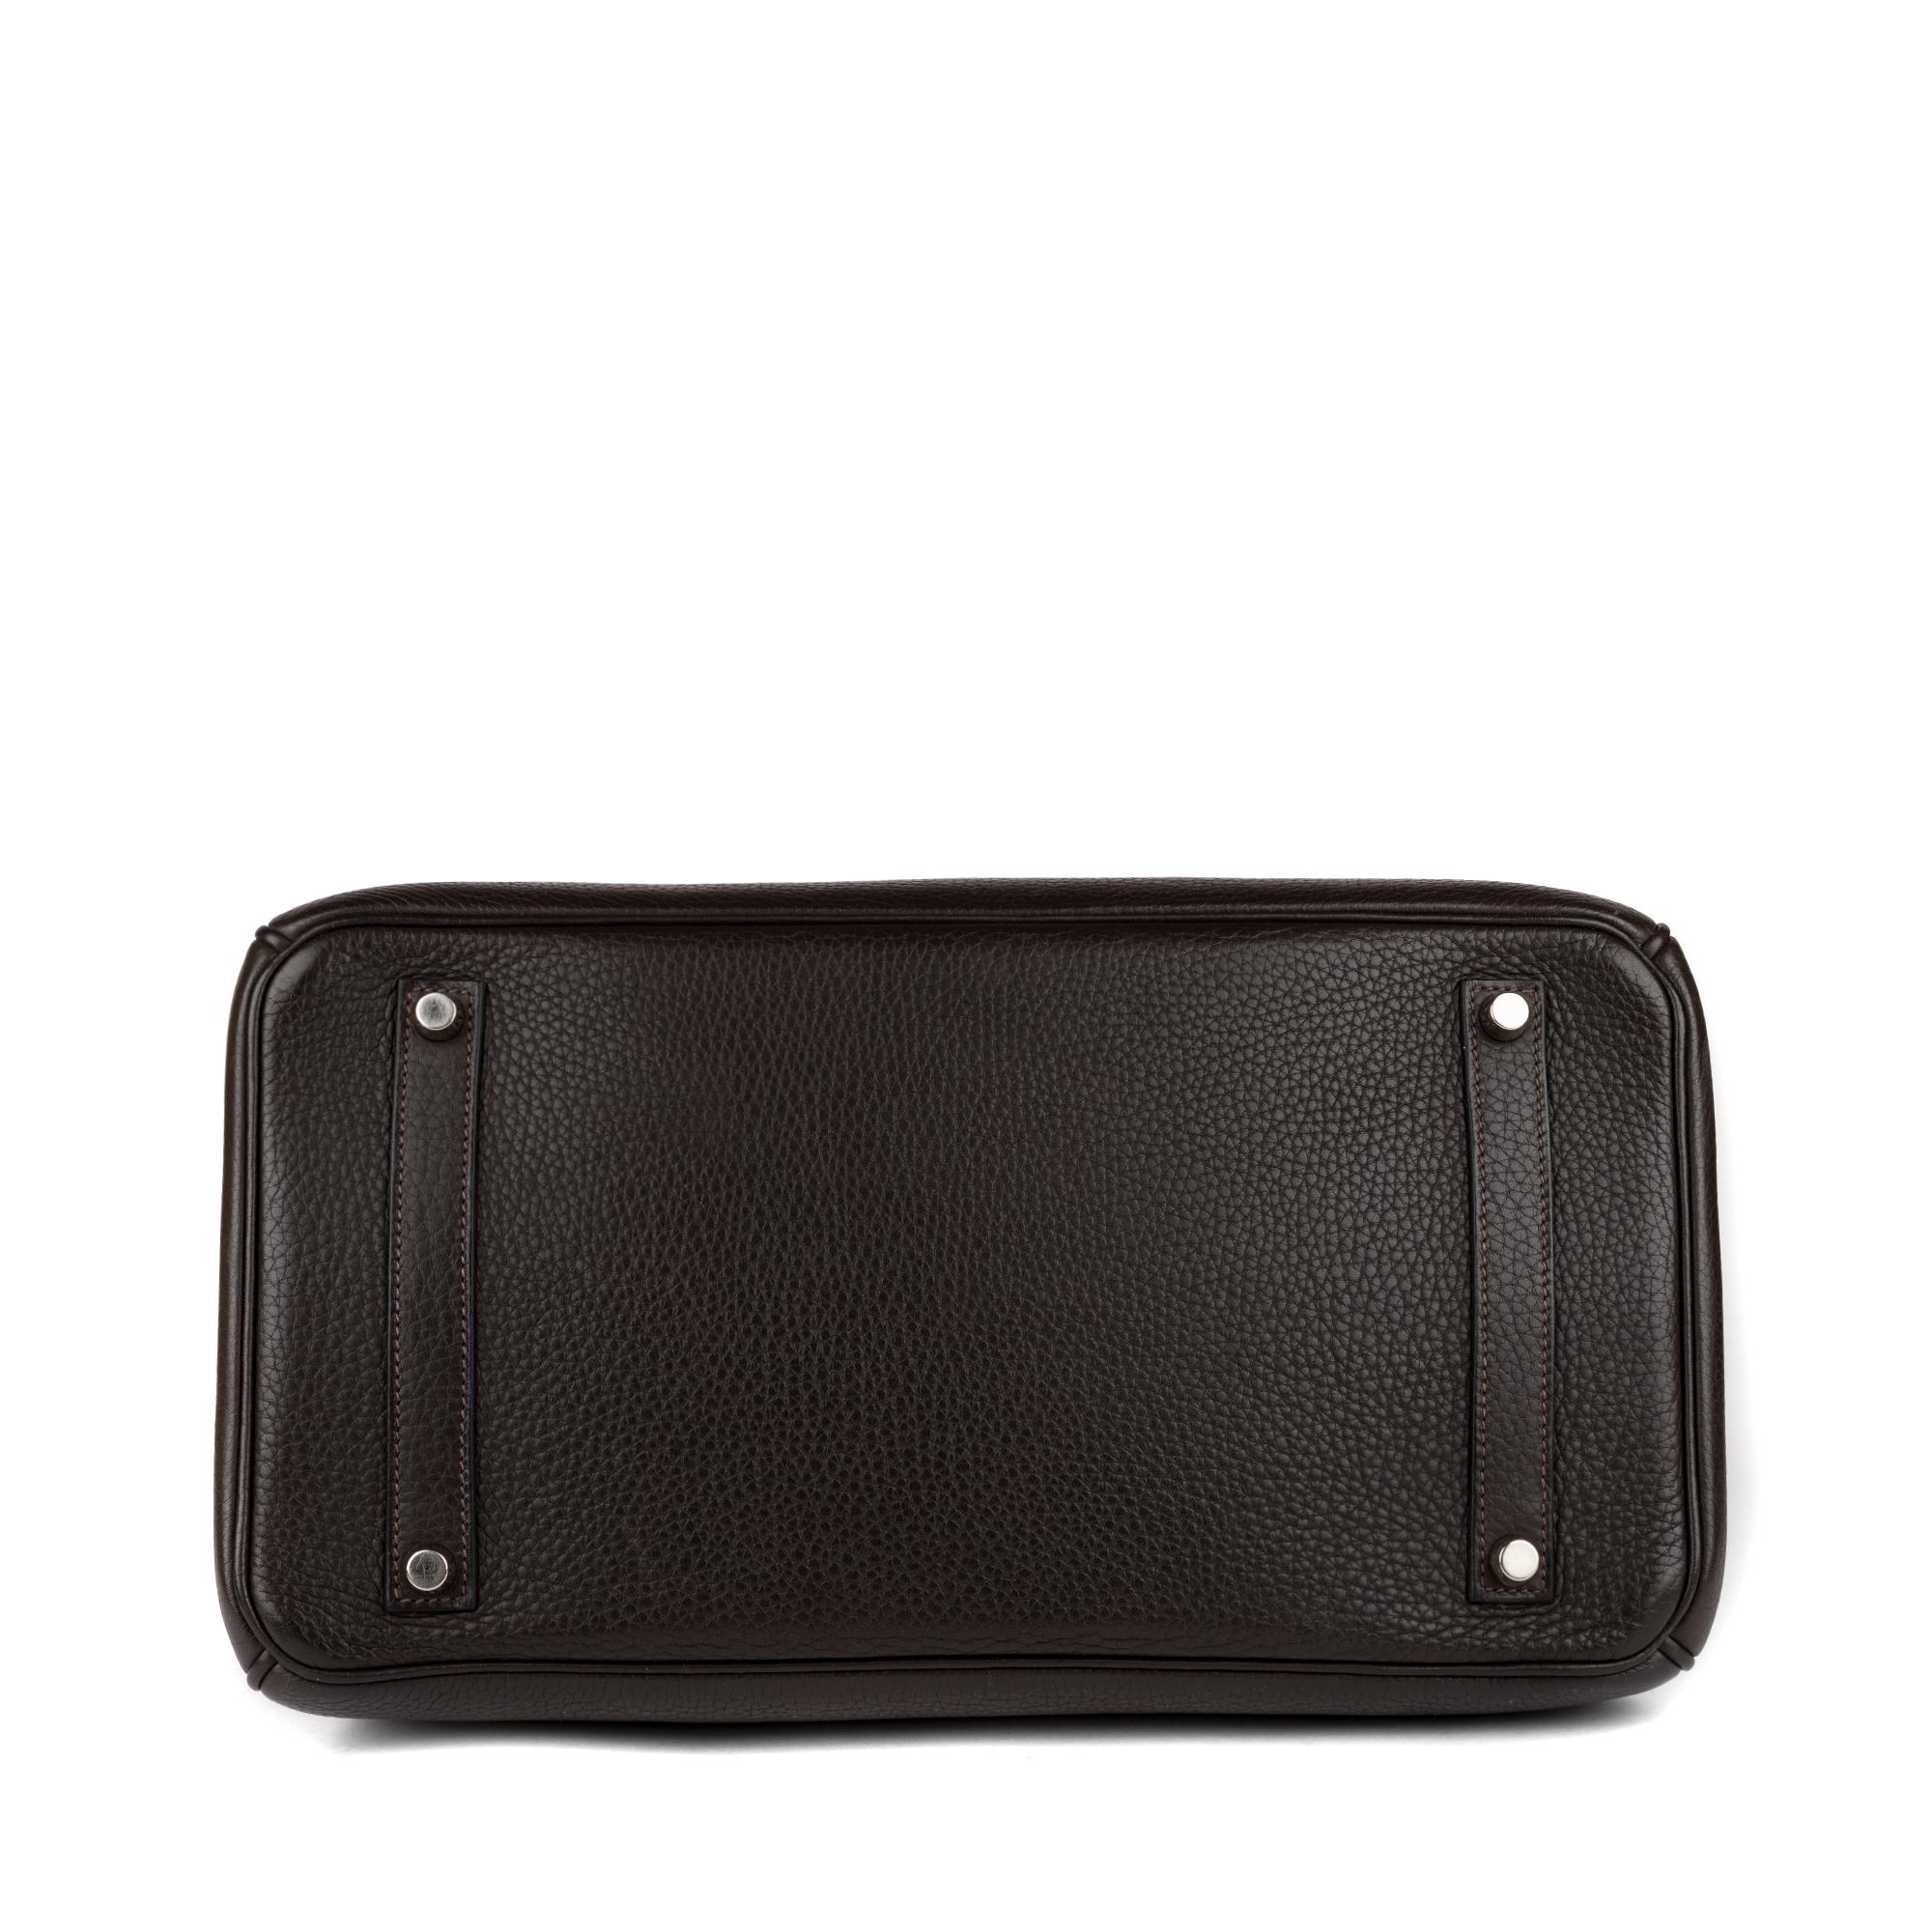 Hermes Birkin 35 Bicolor Ebony/Parma Togo Leather Handbag 1